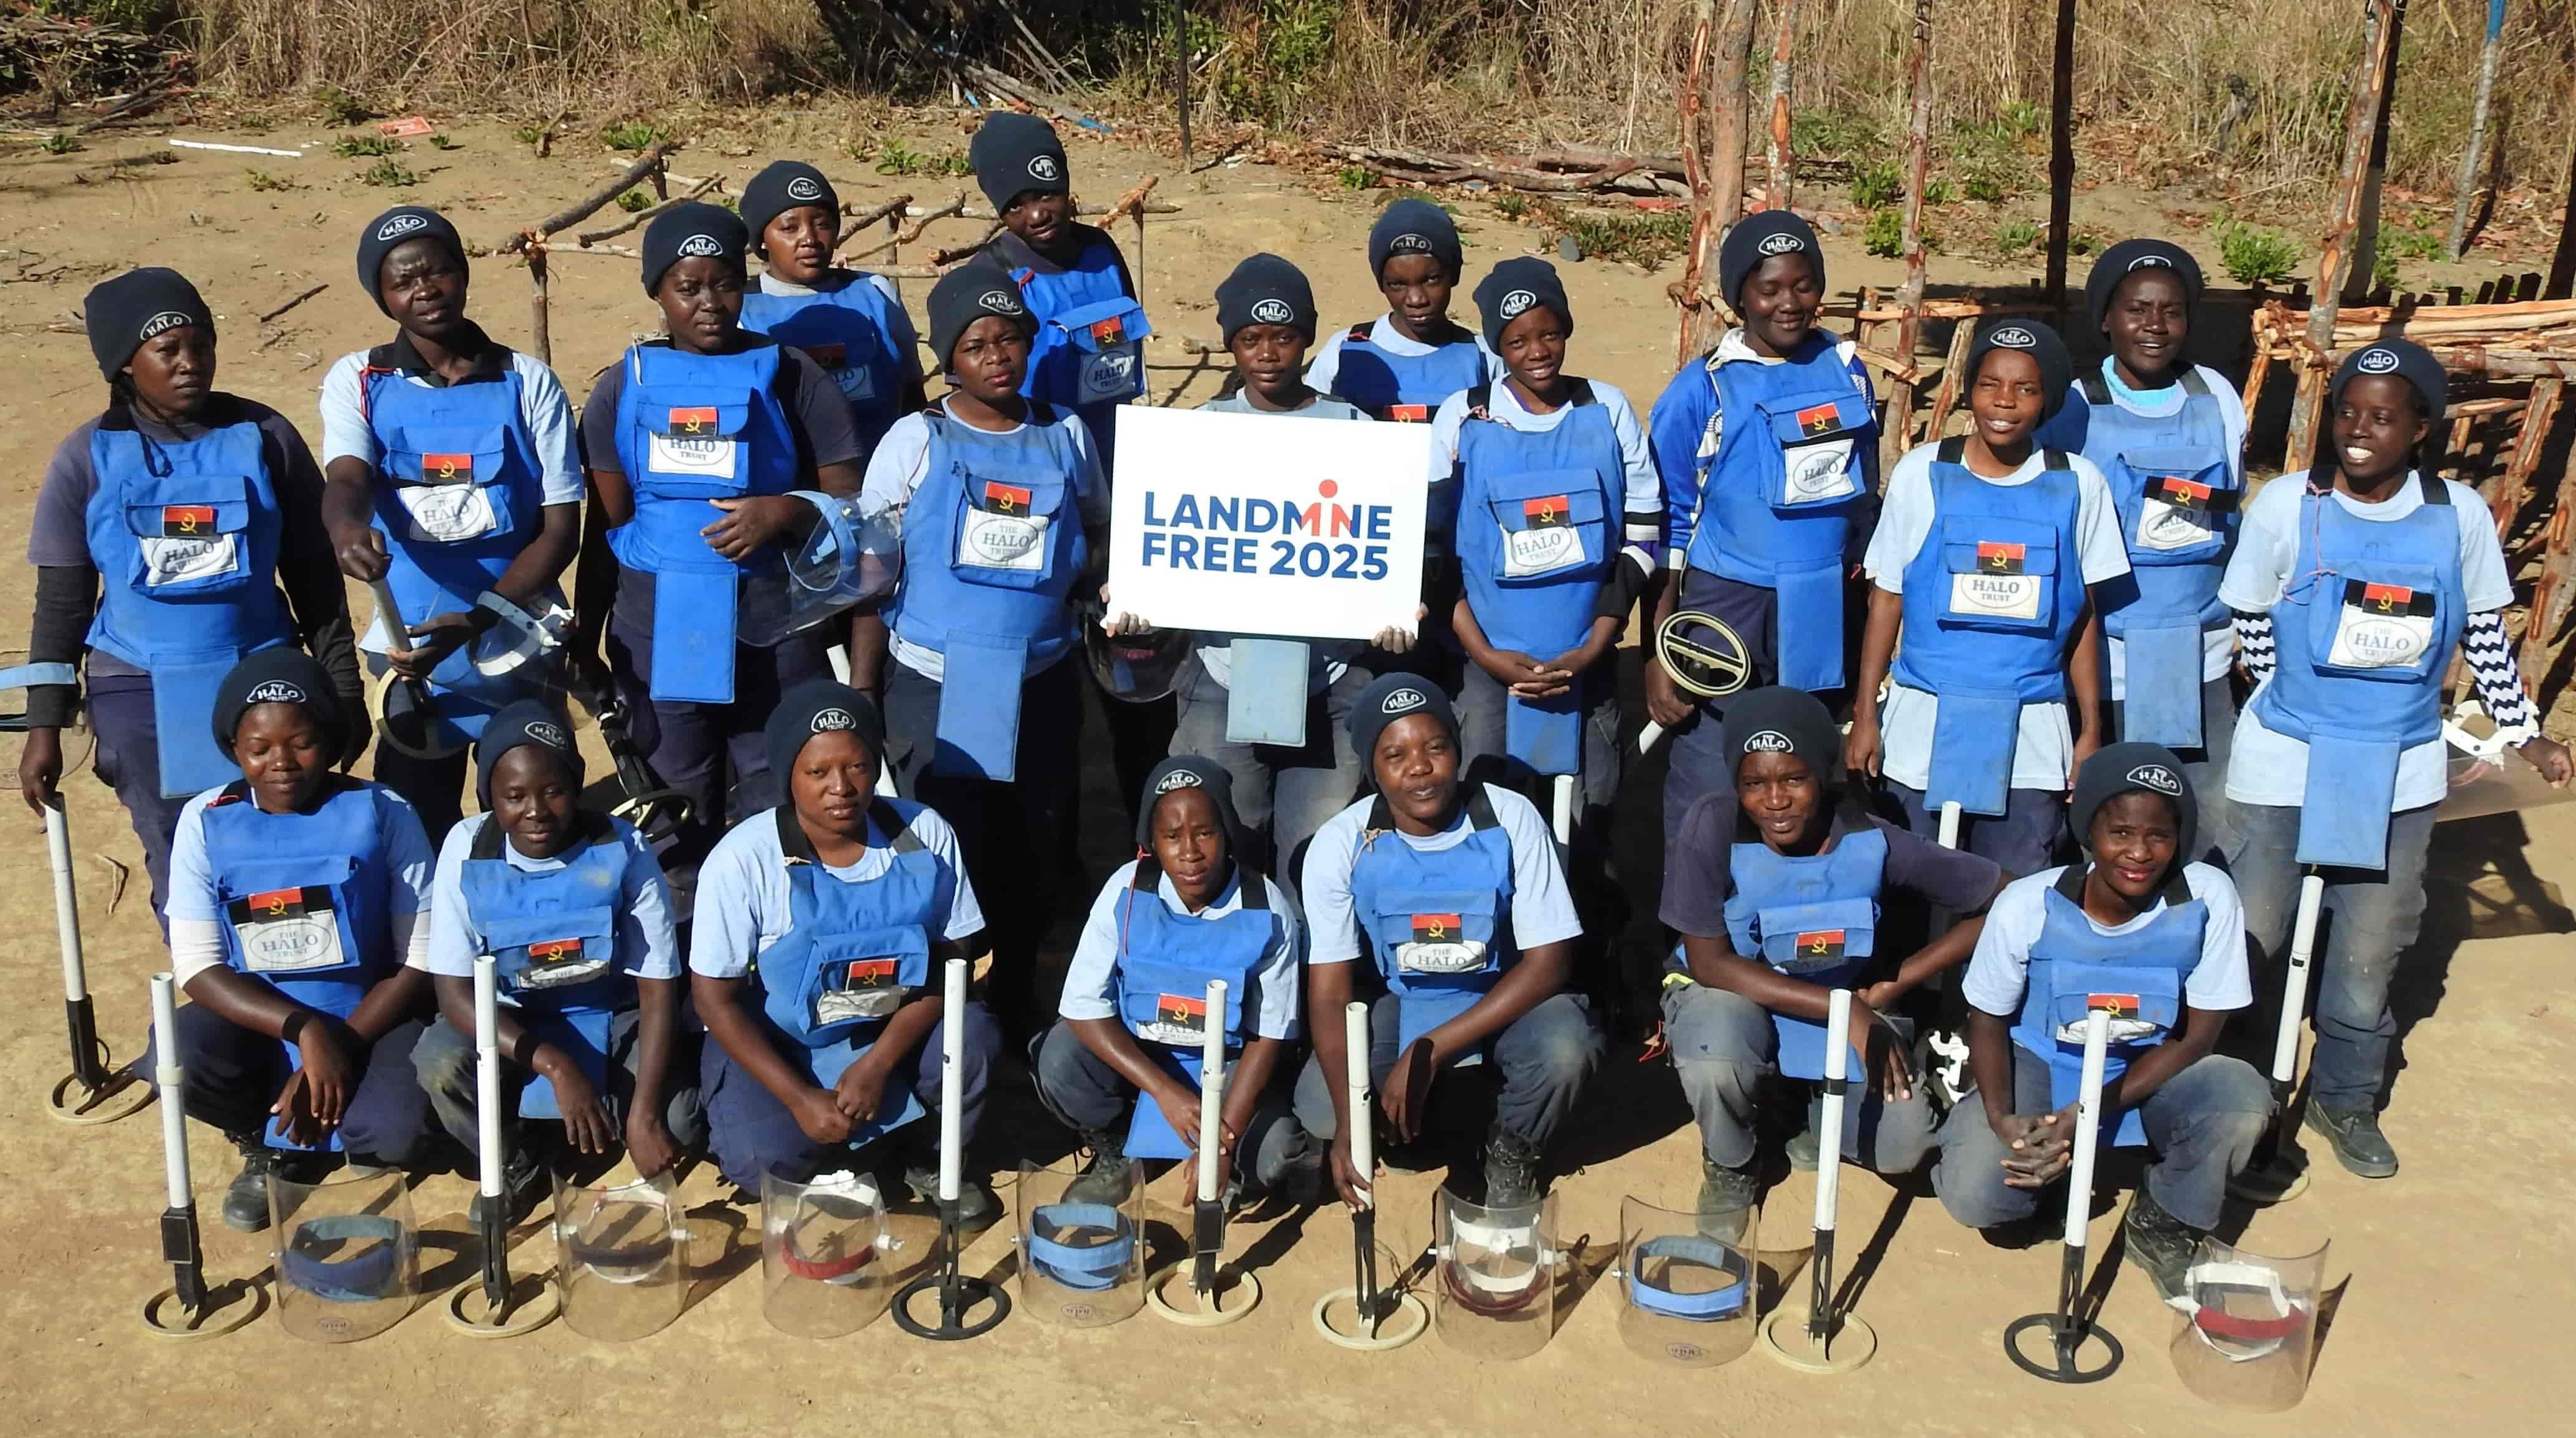 L'équipe de déminage en Angola - le pays devrait être exempt de mines d'ici 2025